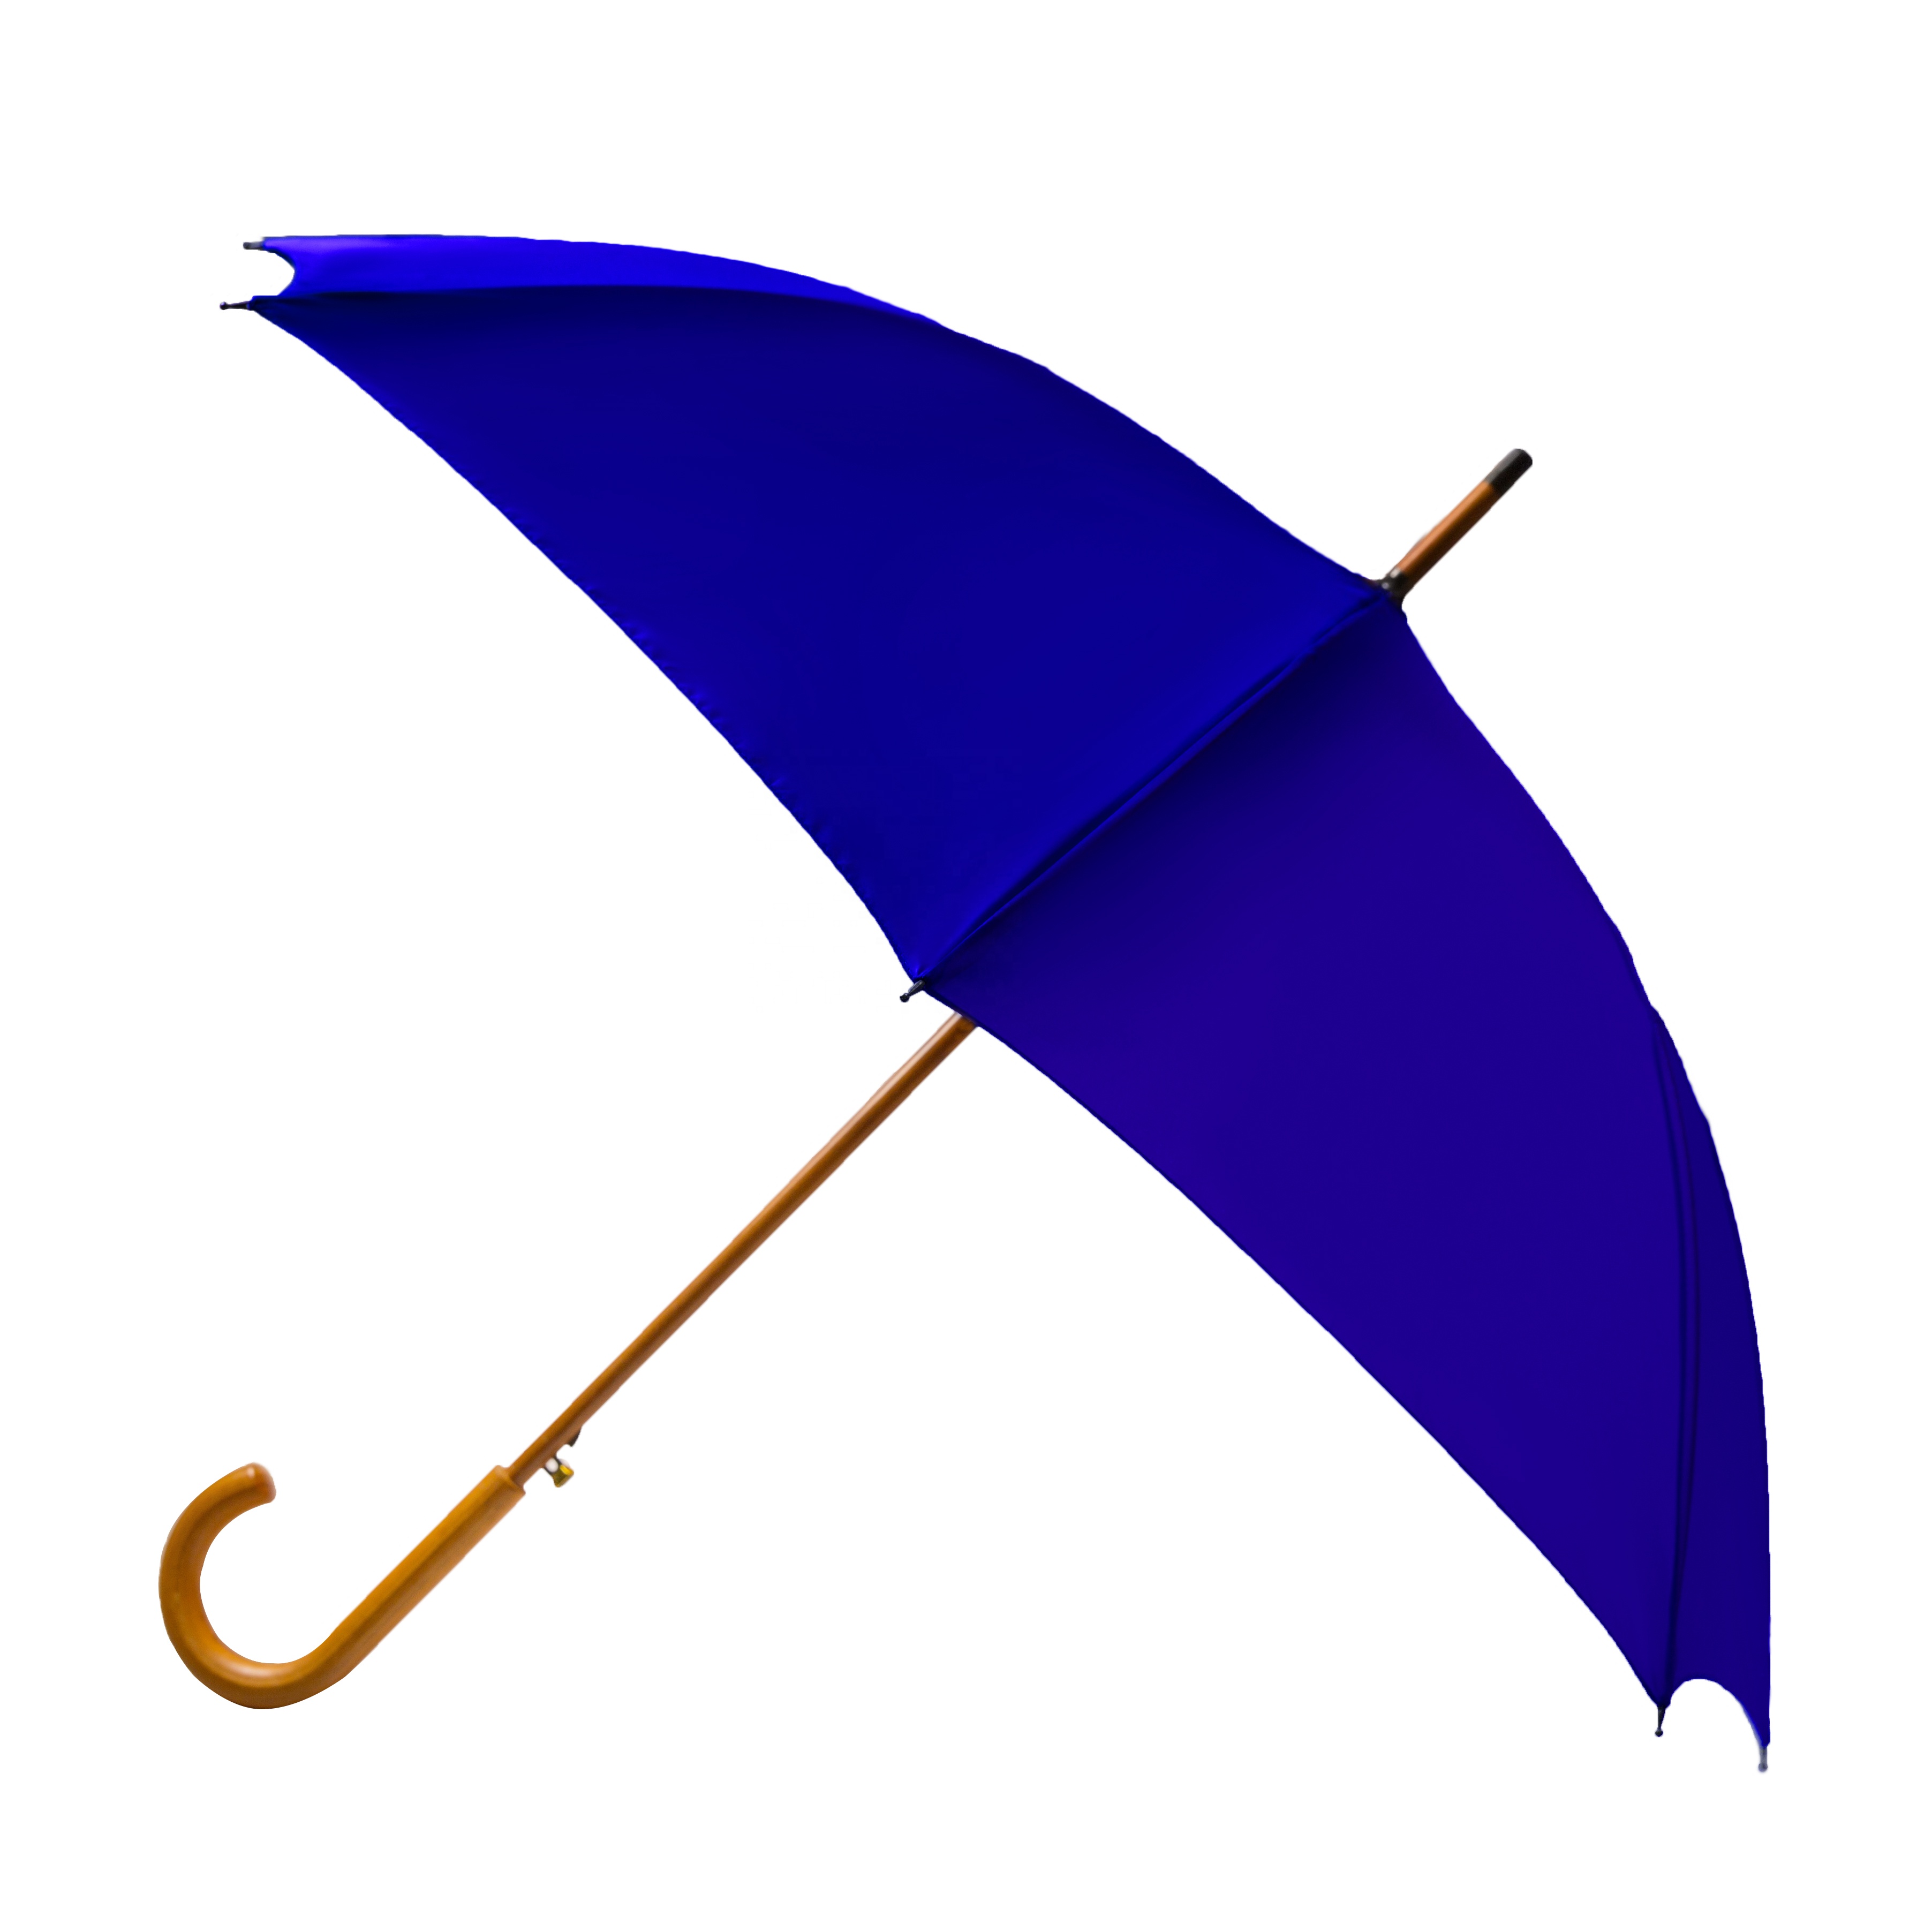 주문 광고를 위한 개인화된 선전용 우산에 의하여 주문을 받아서 만들어지는 인쇄,광고를 위한 개인화된 선전용 우산에 의하여 주문을 받아서 만들어지는 인쇄 가격,광고를 위한 개인화된 선전용 우산에 의하여 주문을 받아서 만들어지는 인쇄 브랜드,광고를 위한 개인화된 선전용 우산에 의하여 주문을 받아서 만들어지는 인쇄 제조업체,광고를 위한 개인화된 선전용 우산에 의하여 주문을 받아서 만들어지는 인쇄 인용,광고를 위한 개인화된 선전용 우산에 의하여 주문을 받아서 만들어지는 인쇄 회사,